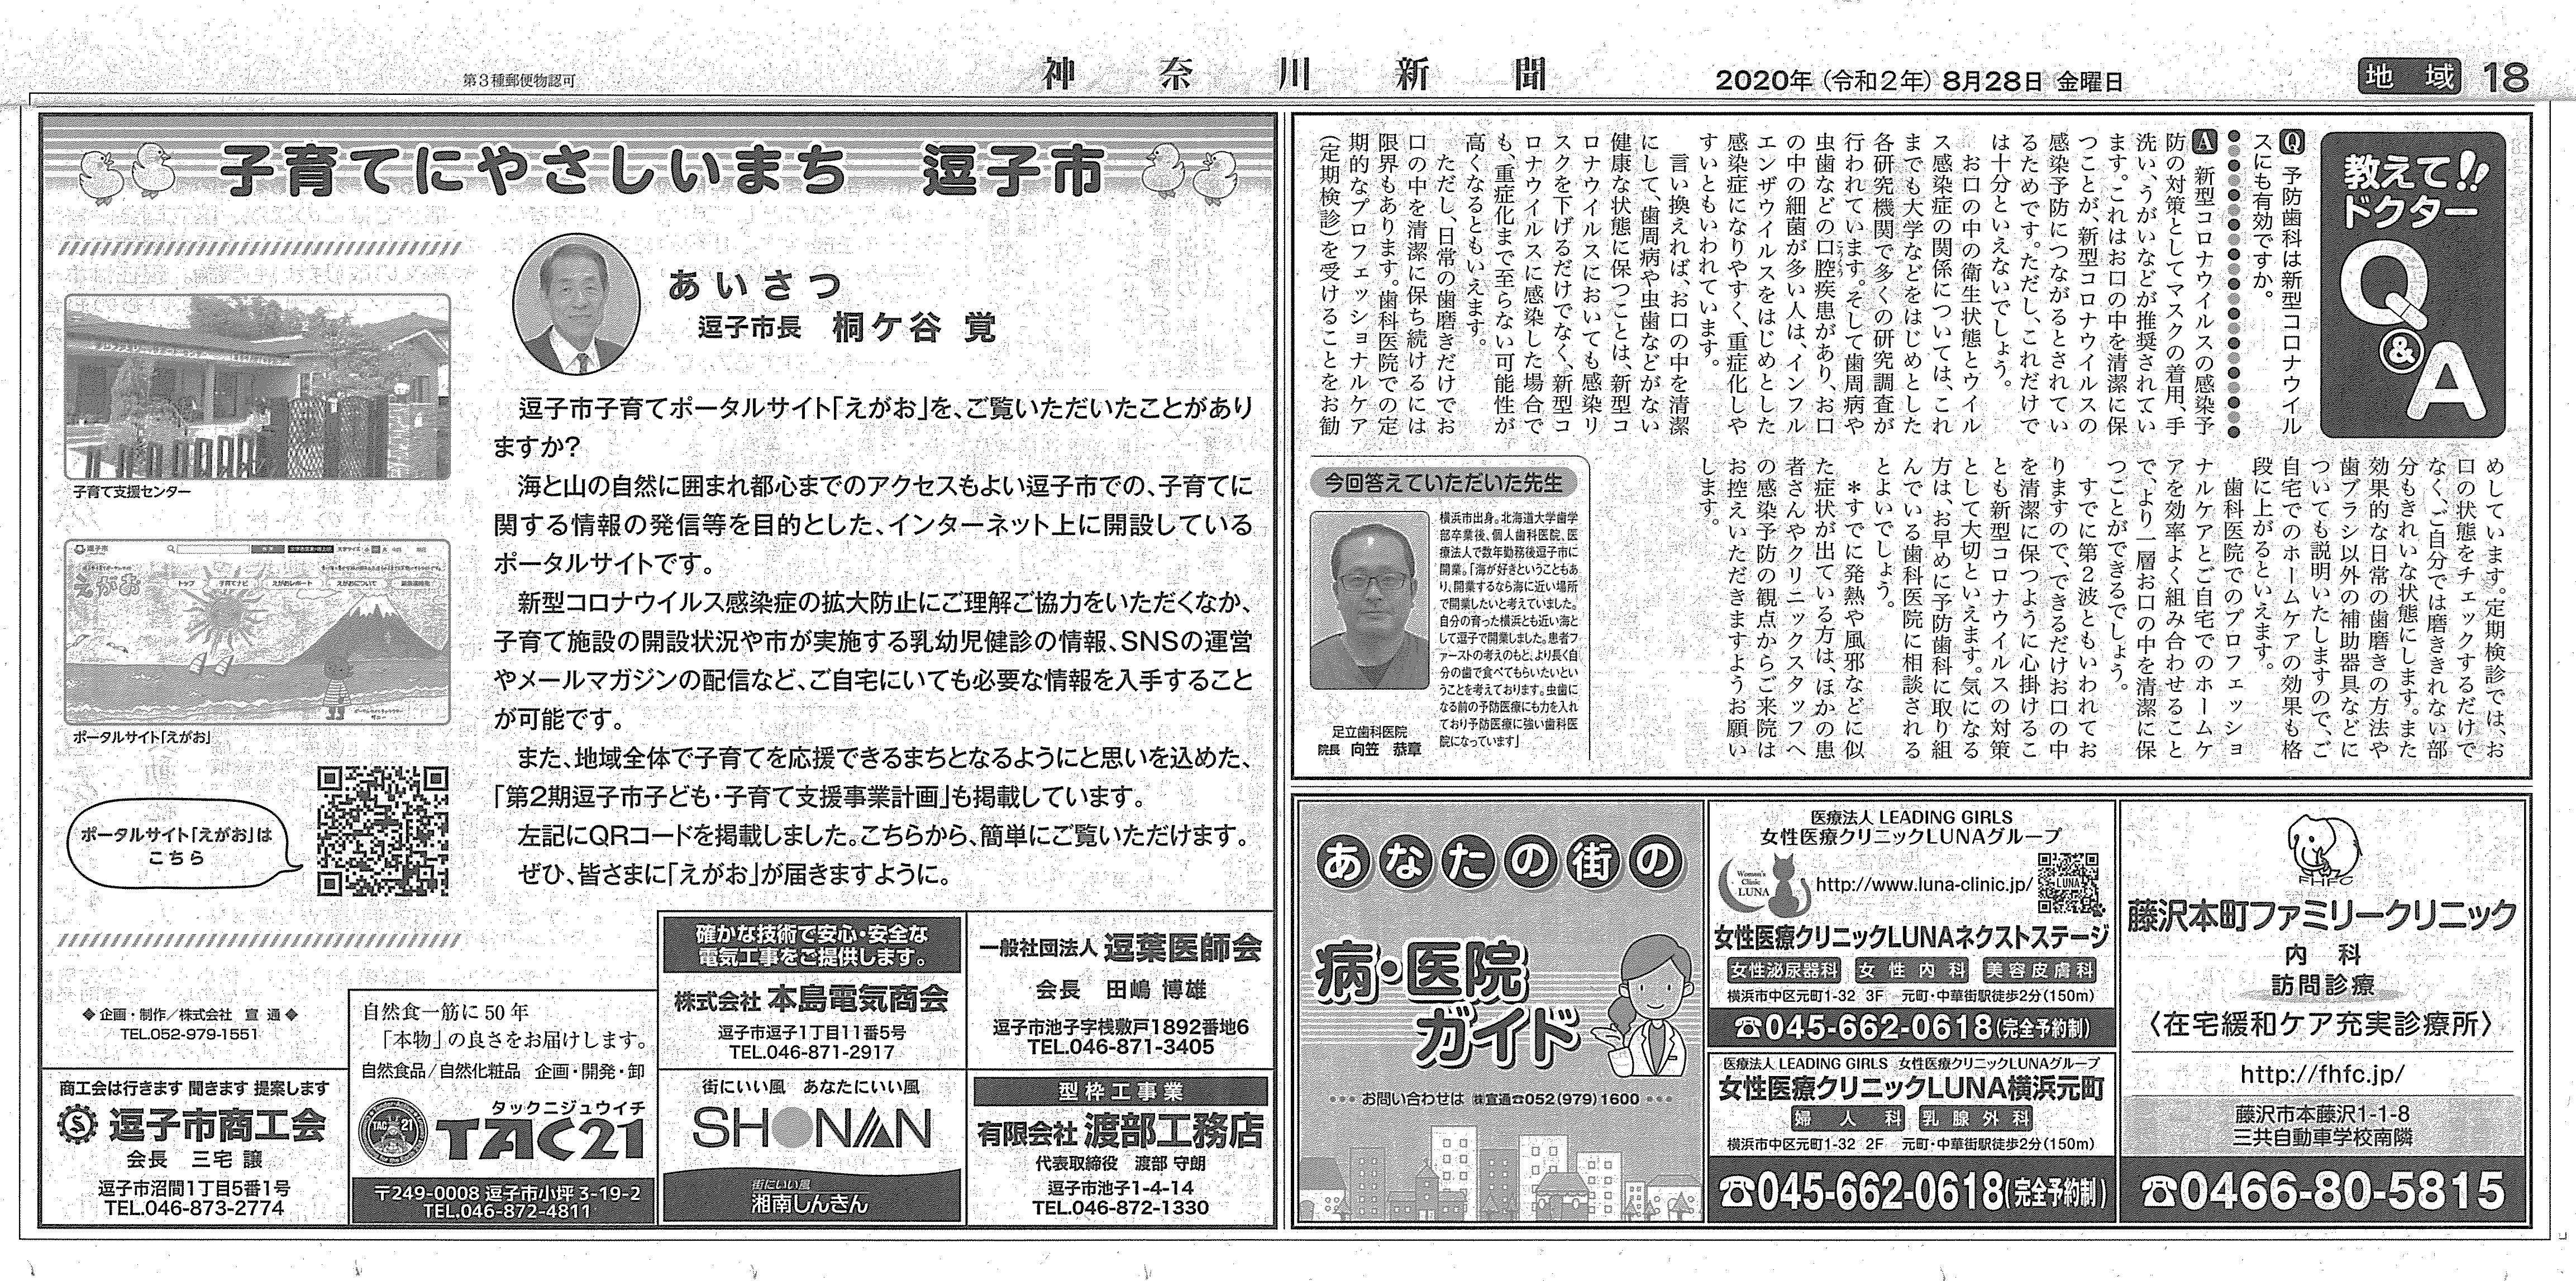 新聞 神奈川 神奈川新聞柏尾安希子 植村隆裁判で西岡力訴訟を隠蔽し「捏造と認定せず」映画「標的」の宣伝